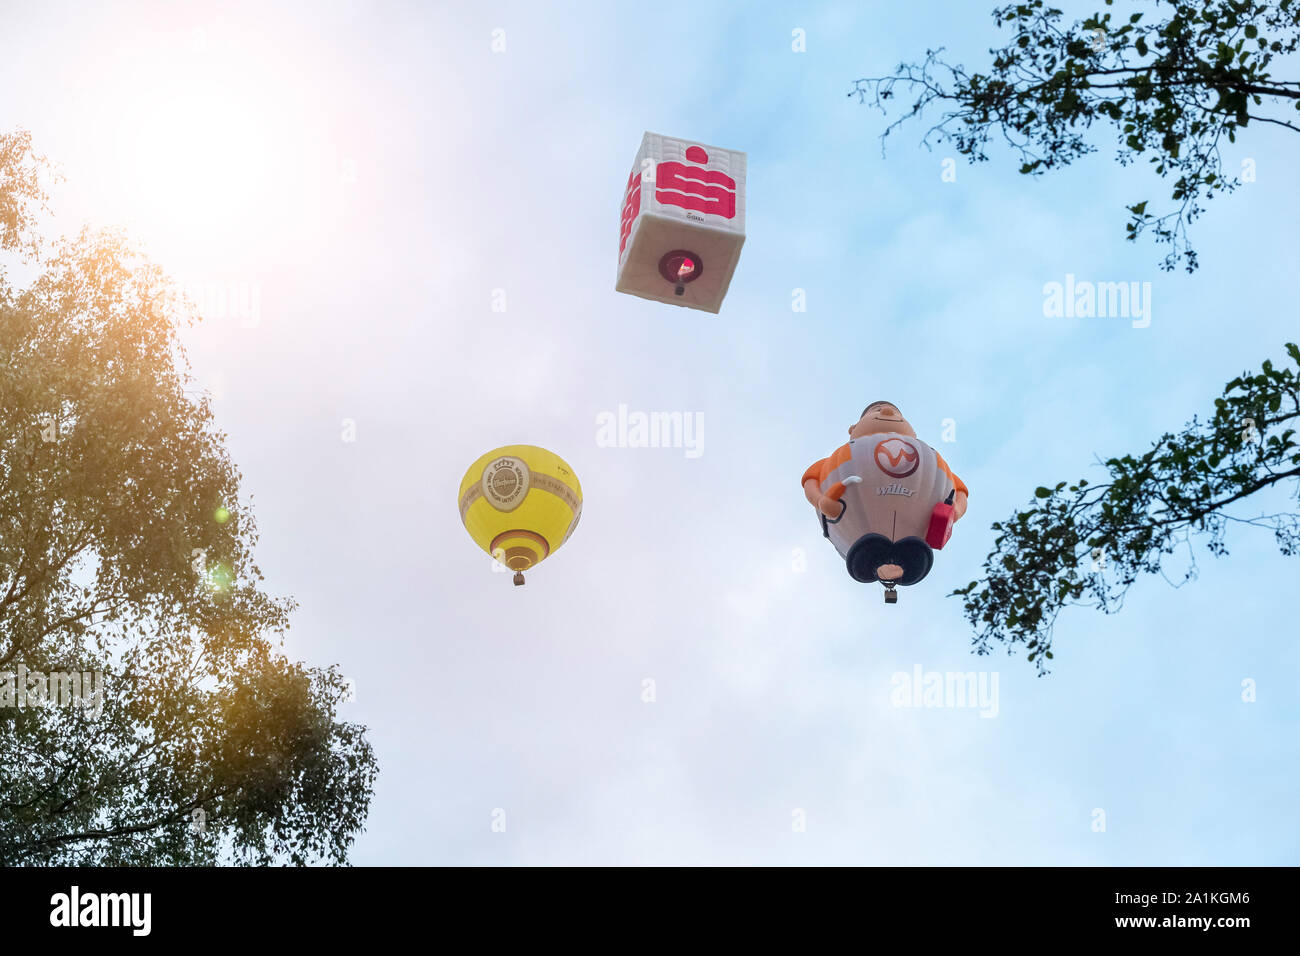 Rüthen, NRW/Deutschland - 2. September 2019: Warsteins internationale montgolfiade ist die Veranstaltung mit Heißluftballons. Drei verschiedene Stockfoto